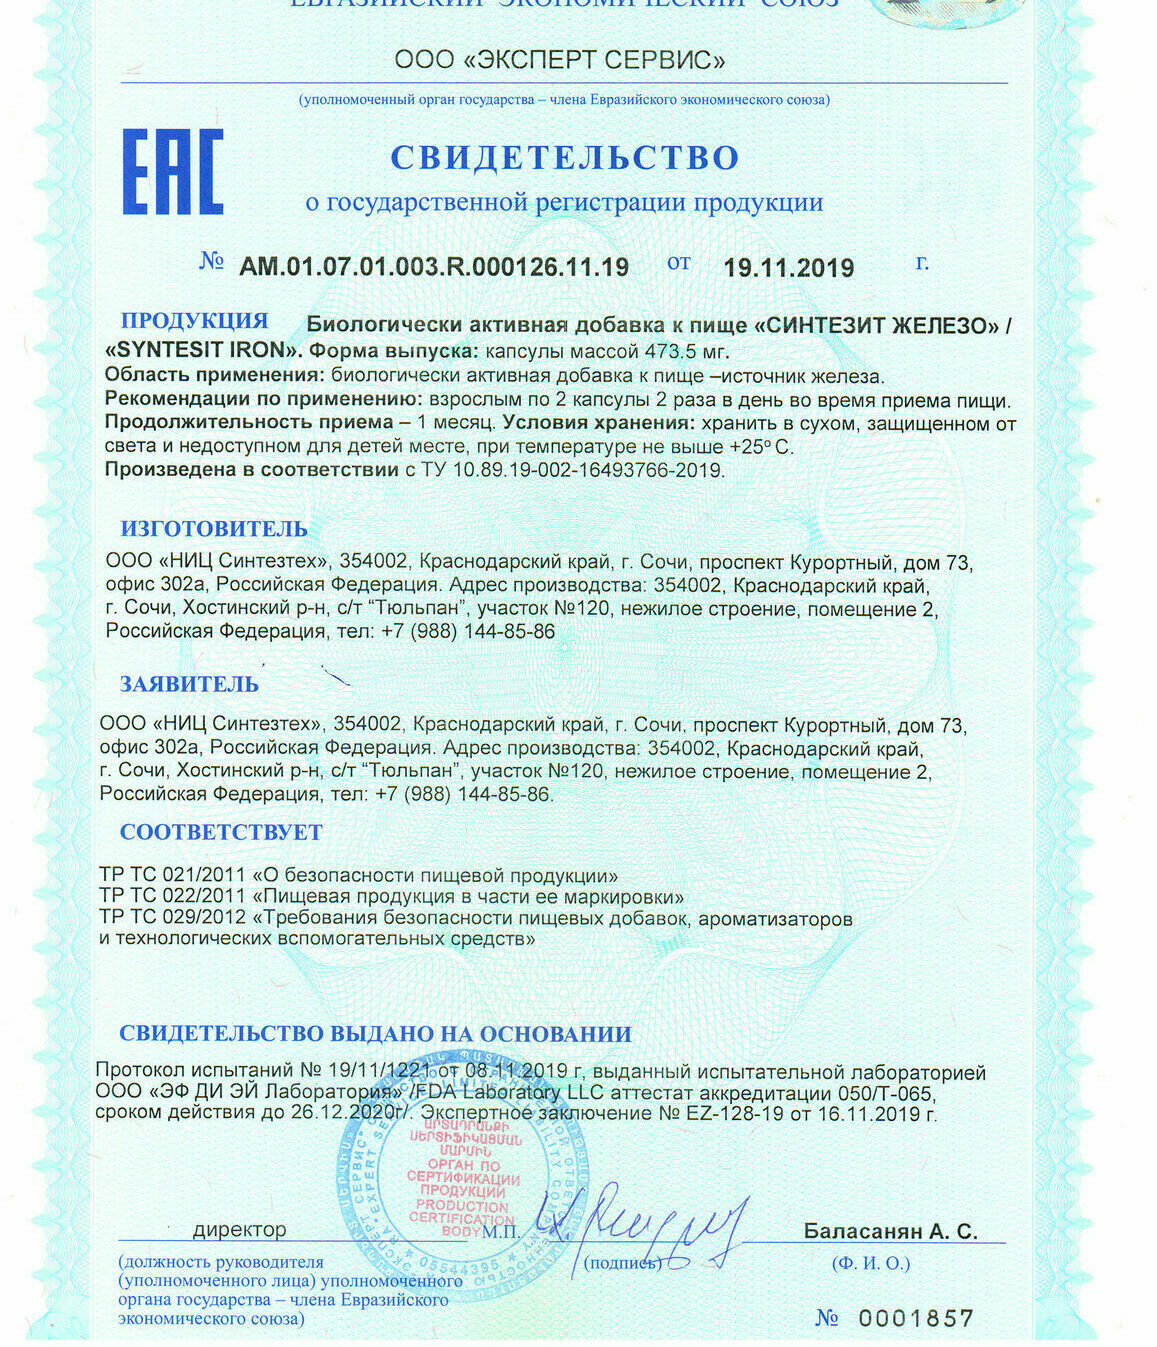 Сертификат Синтезит Железо, Synthesit Iron